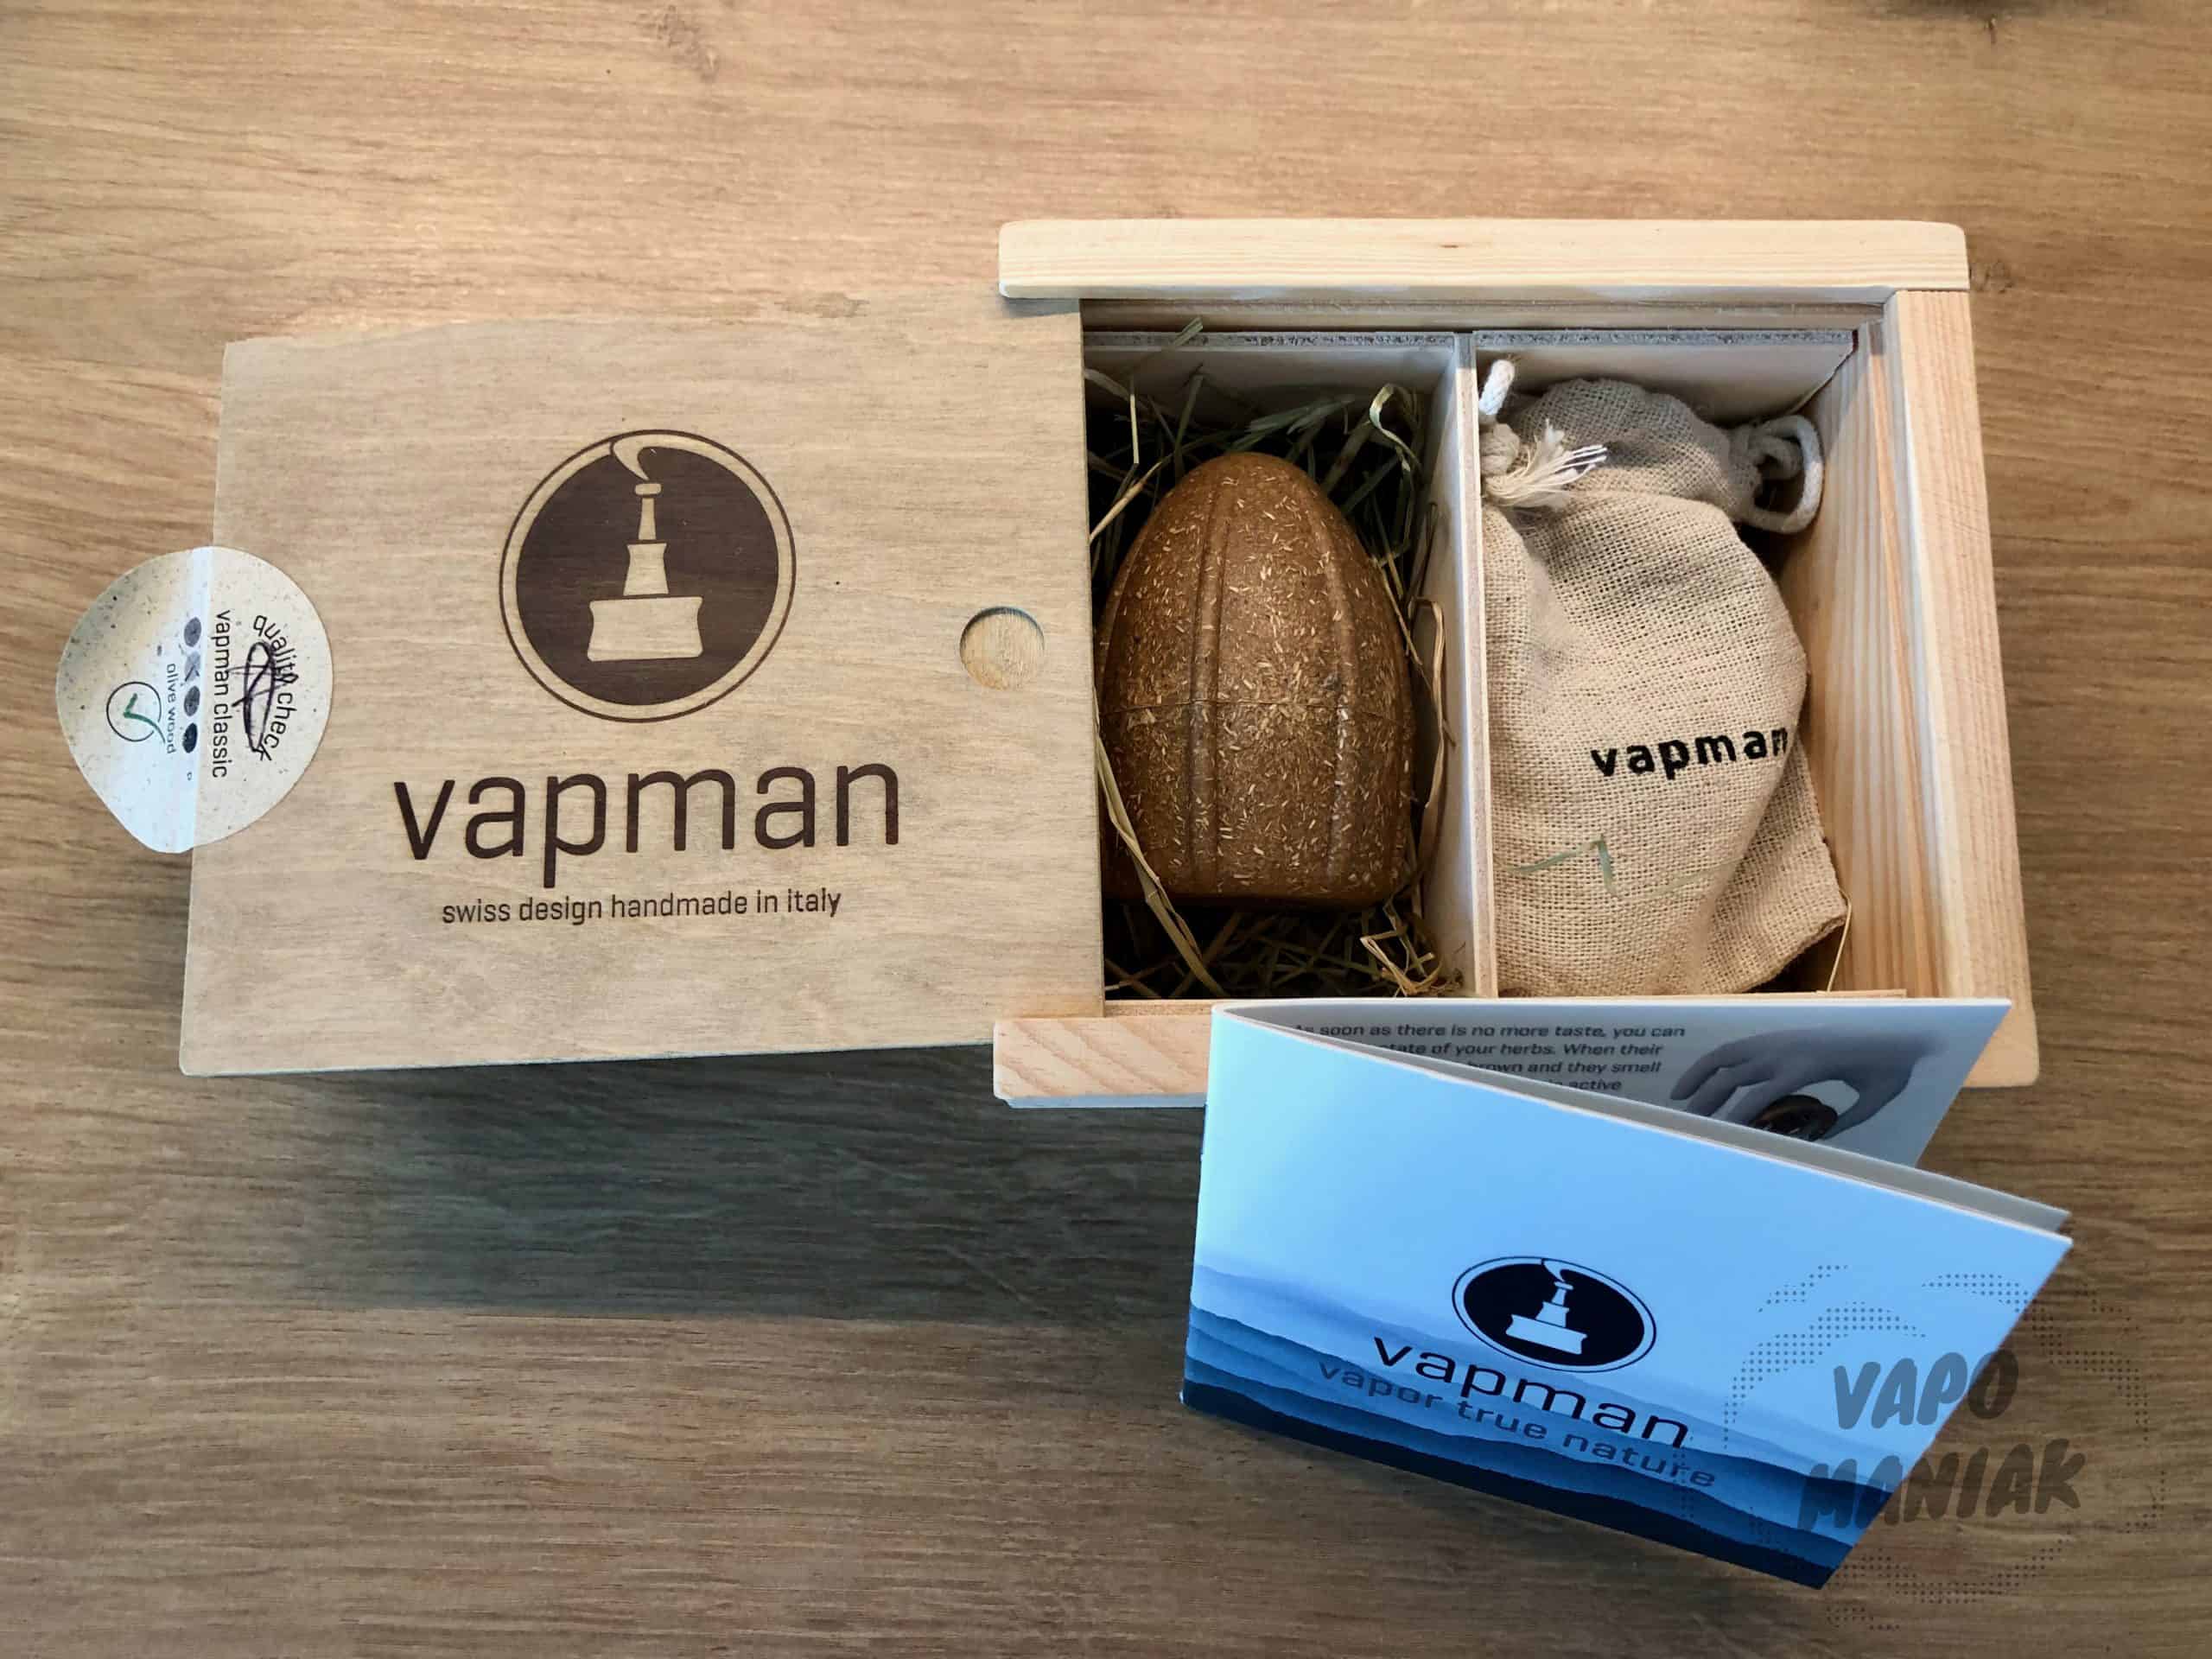 Vapman Vaporizer otrzymujemy w ekologicznym, drewnianym pudełku.